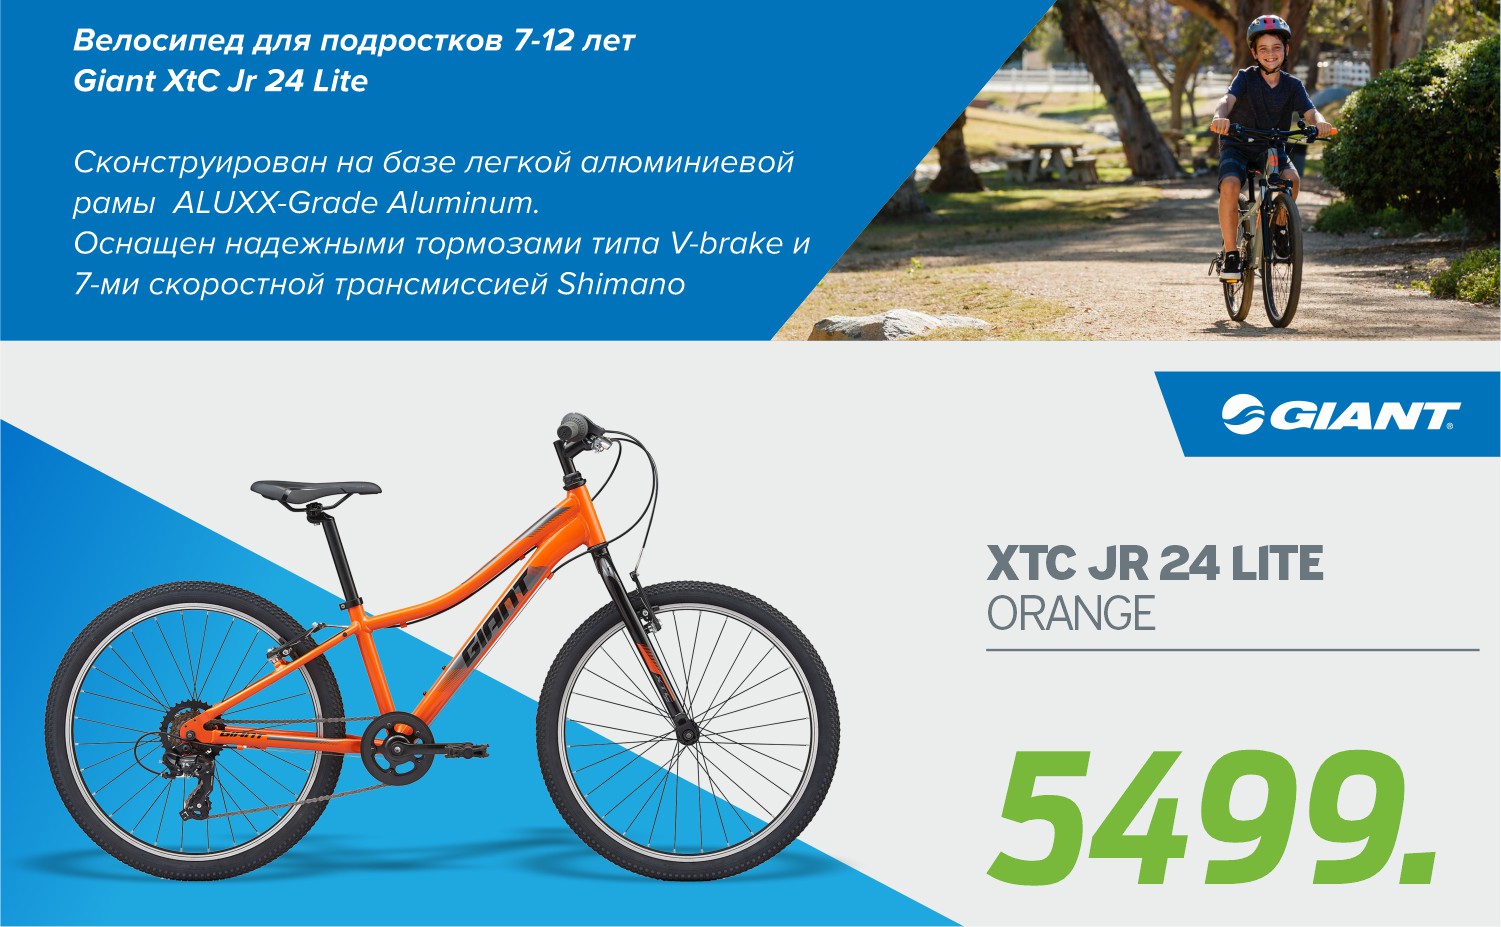 купить подрастковый велосипед, bmx chisinau